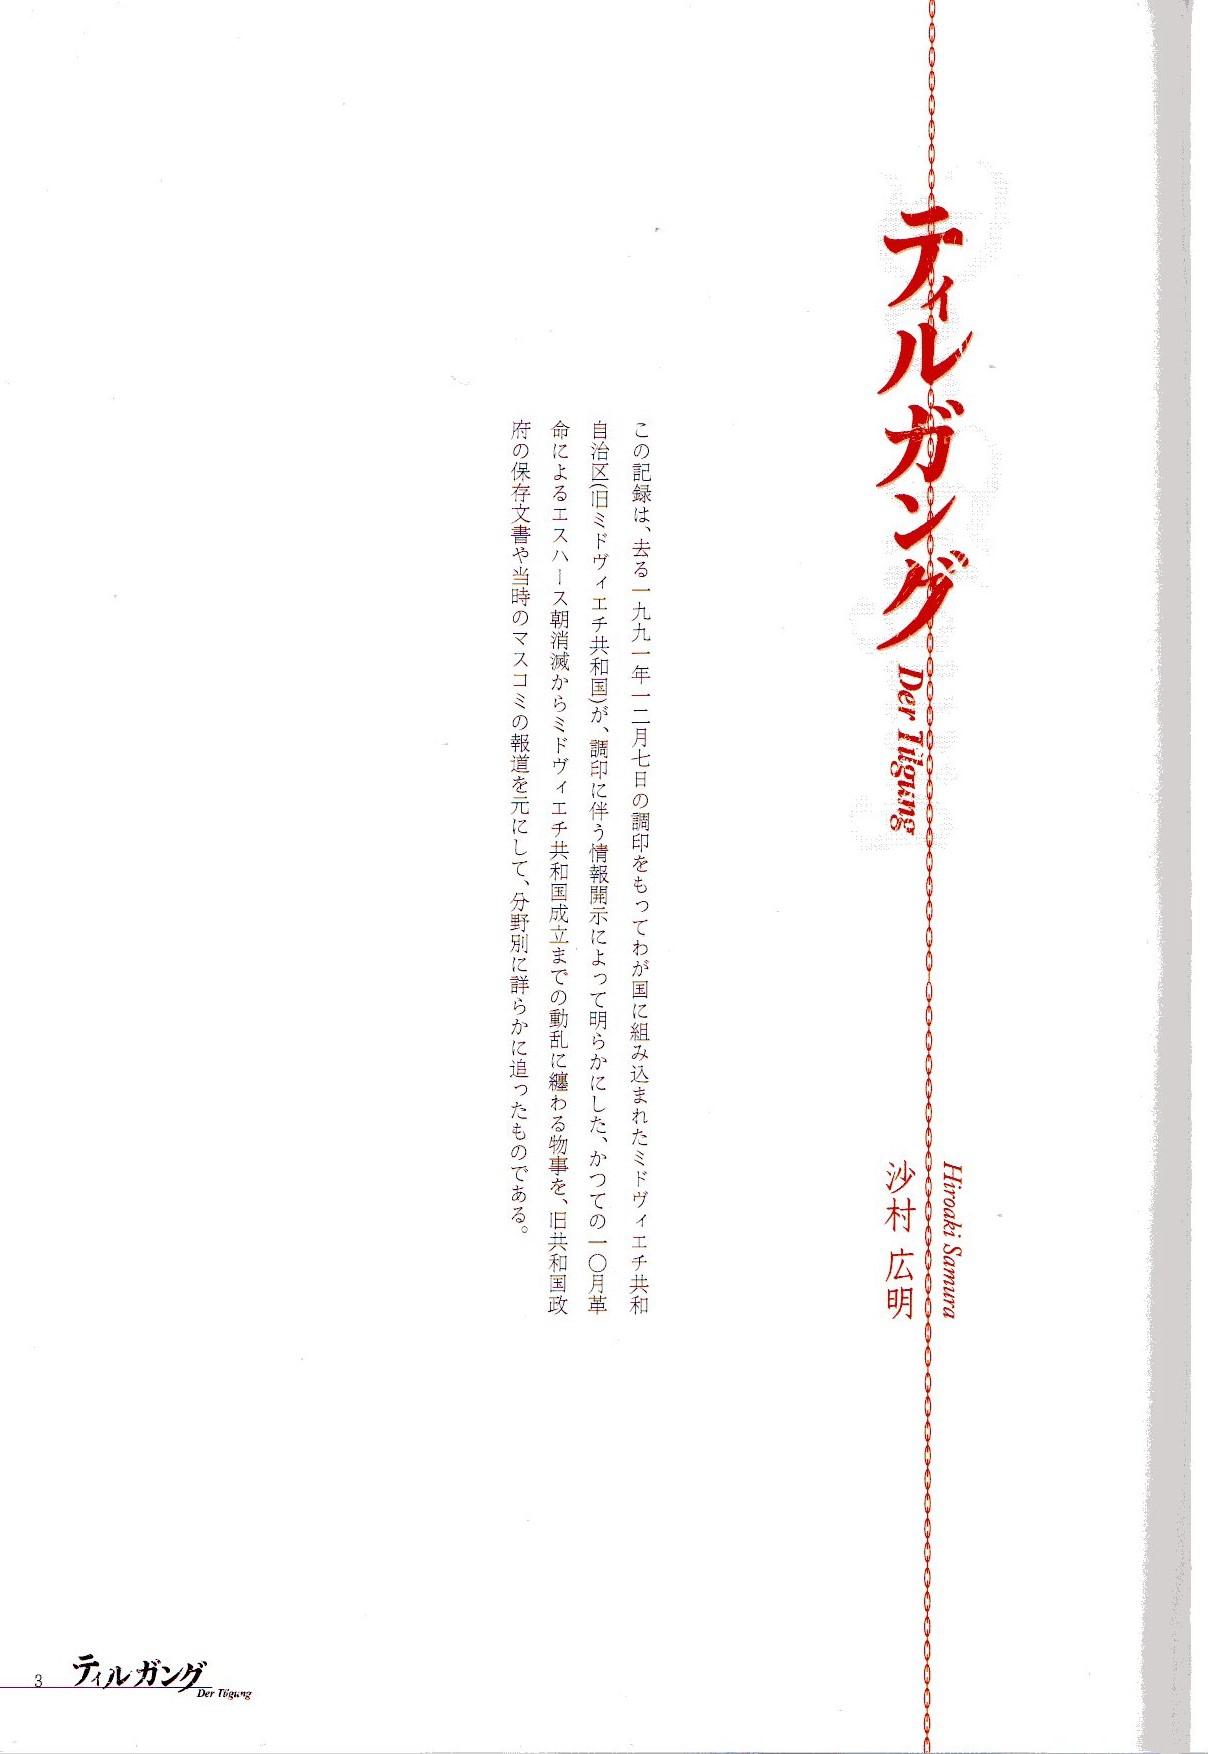 Japanese Der Tilgung Ffm - Page 2